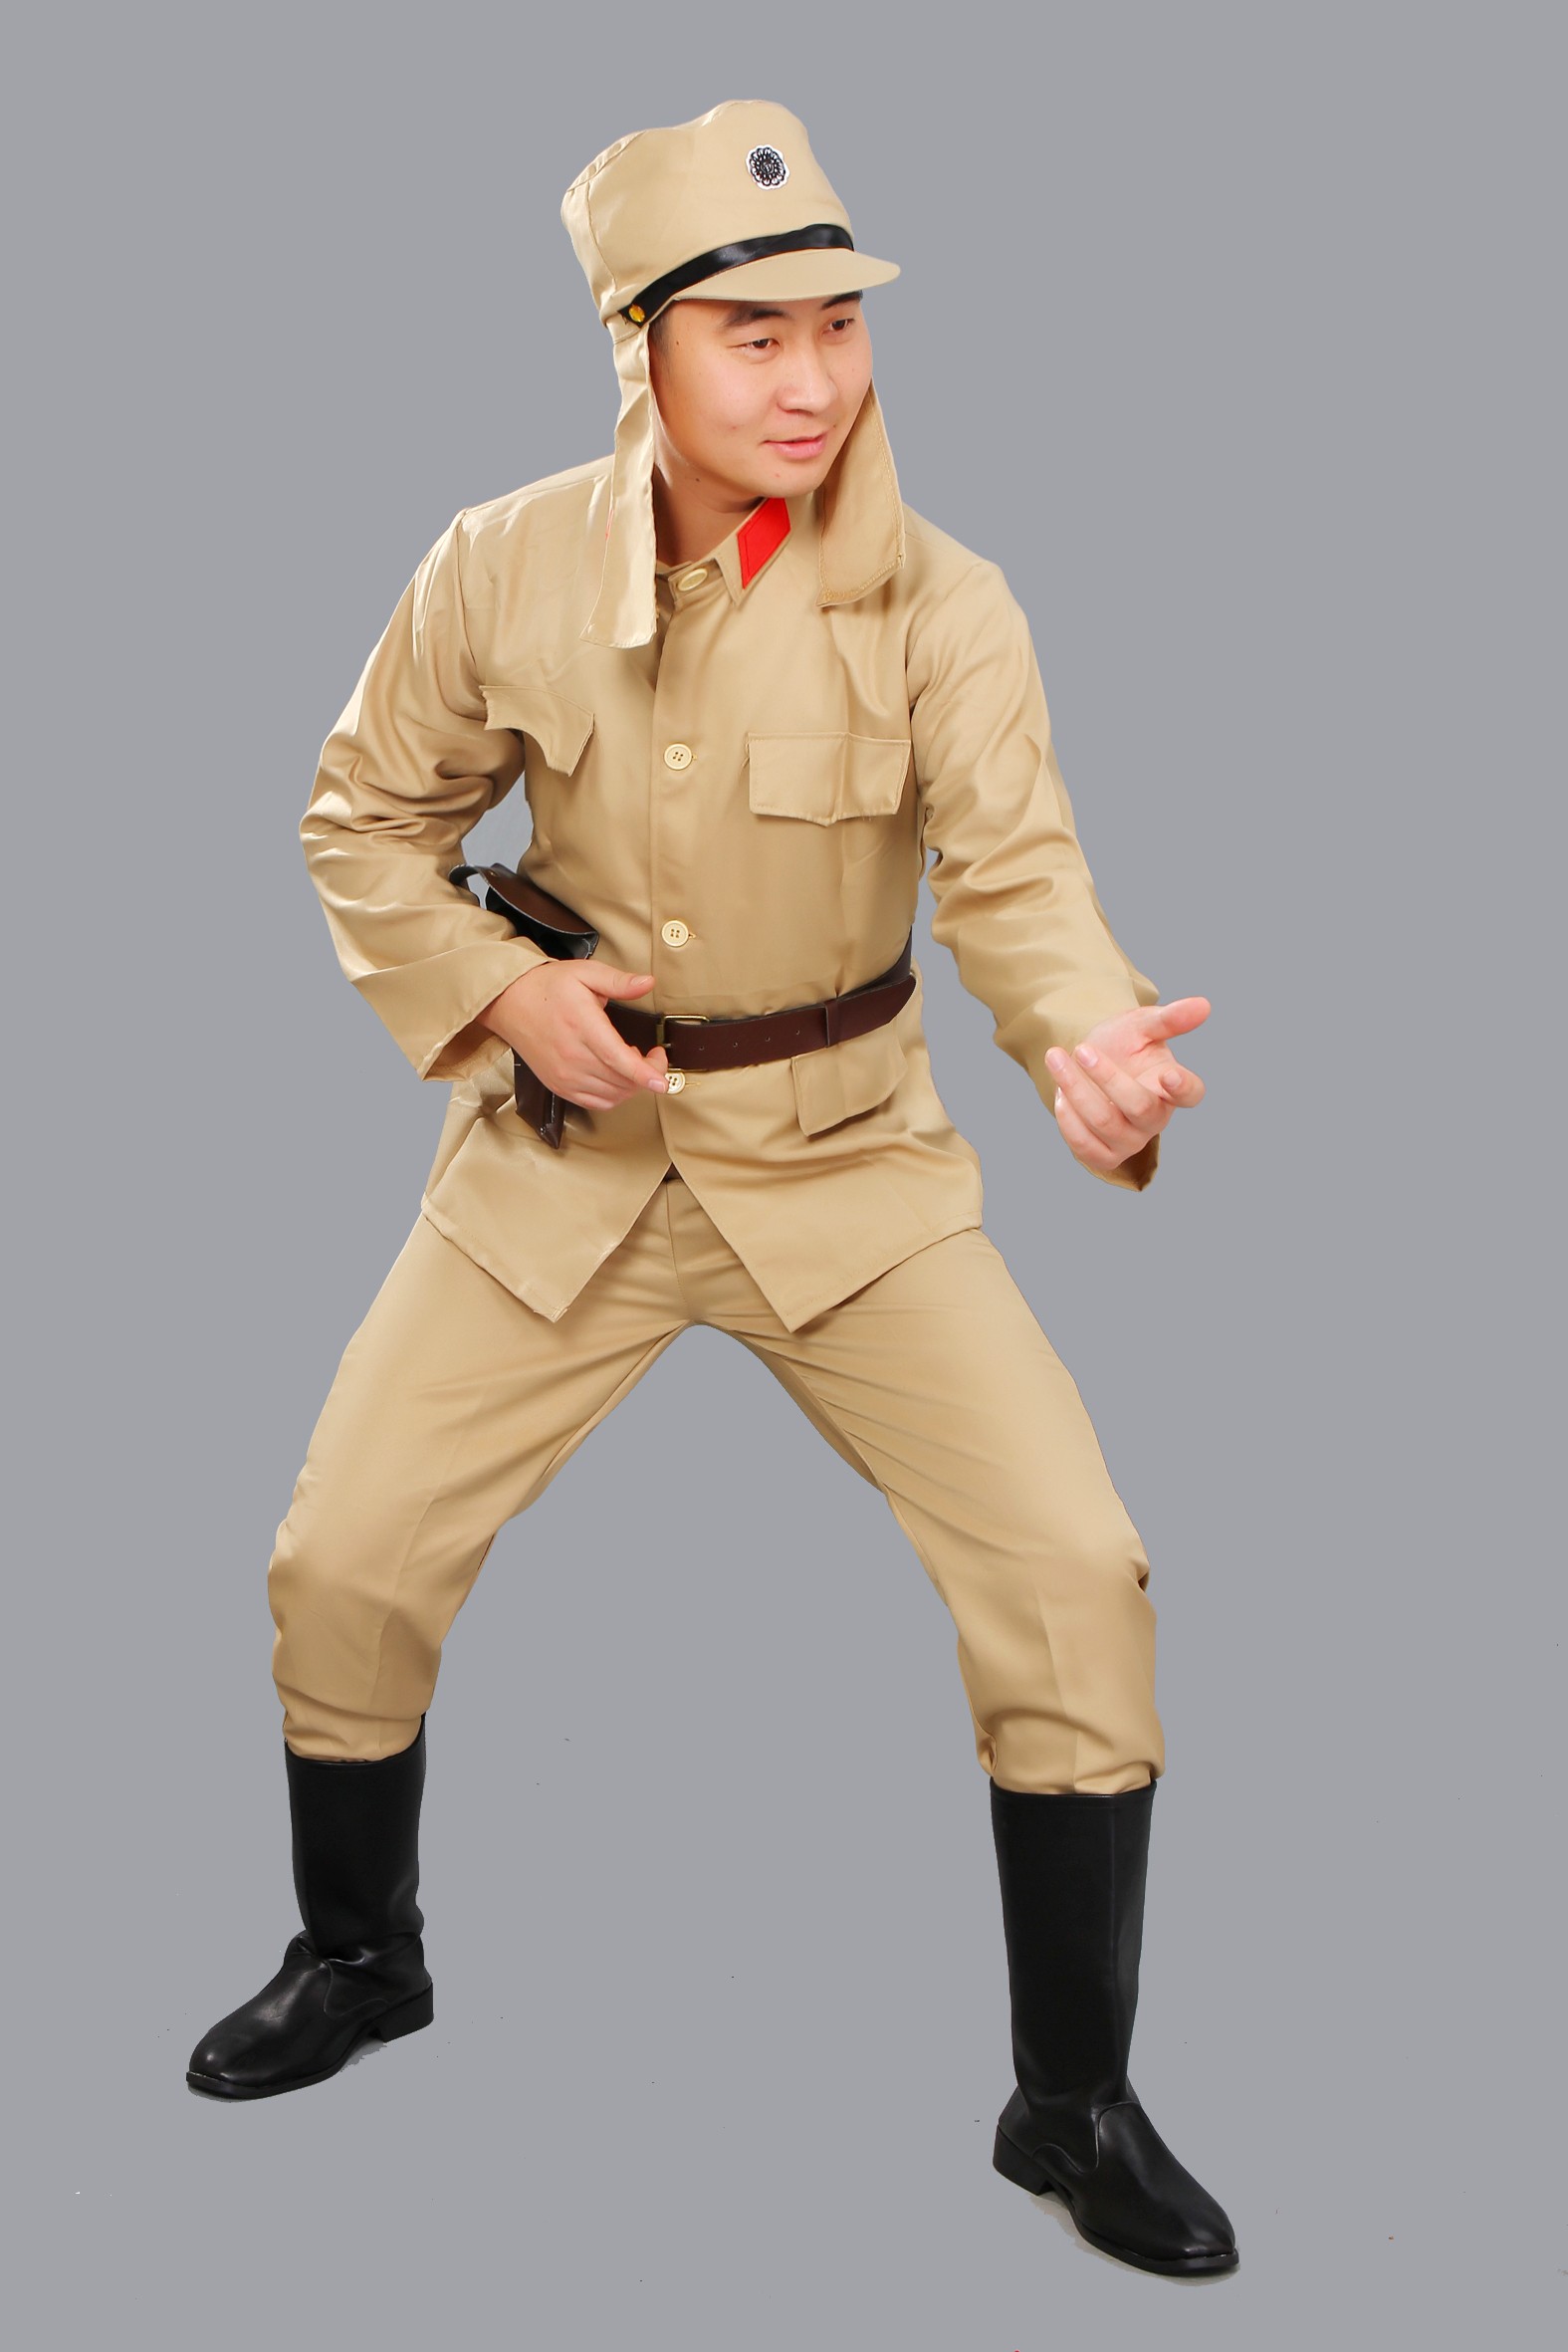 日军军装新款日本军服演出服服装舞台装军官汉奸演出装套装表演服